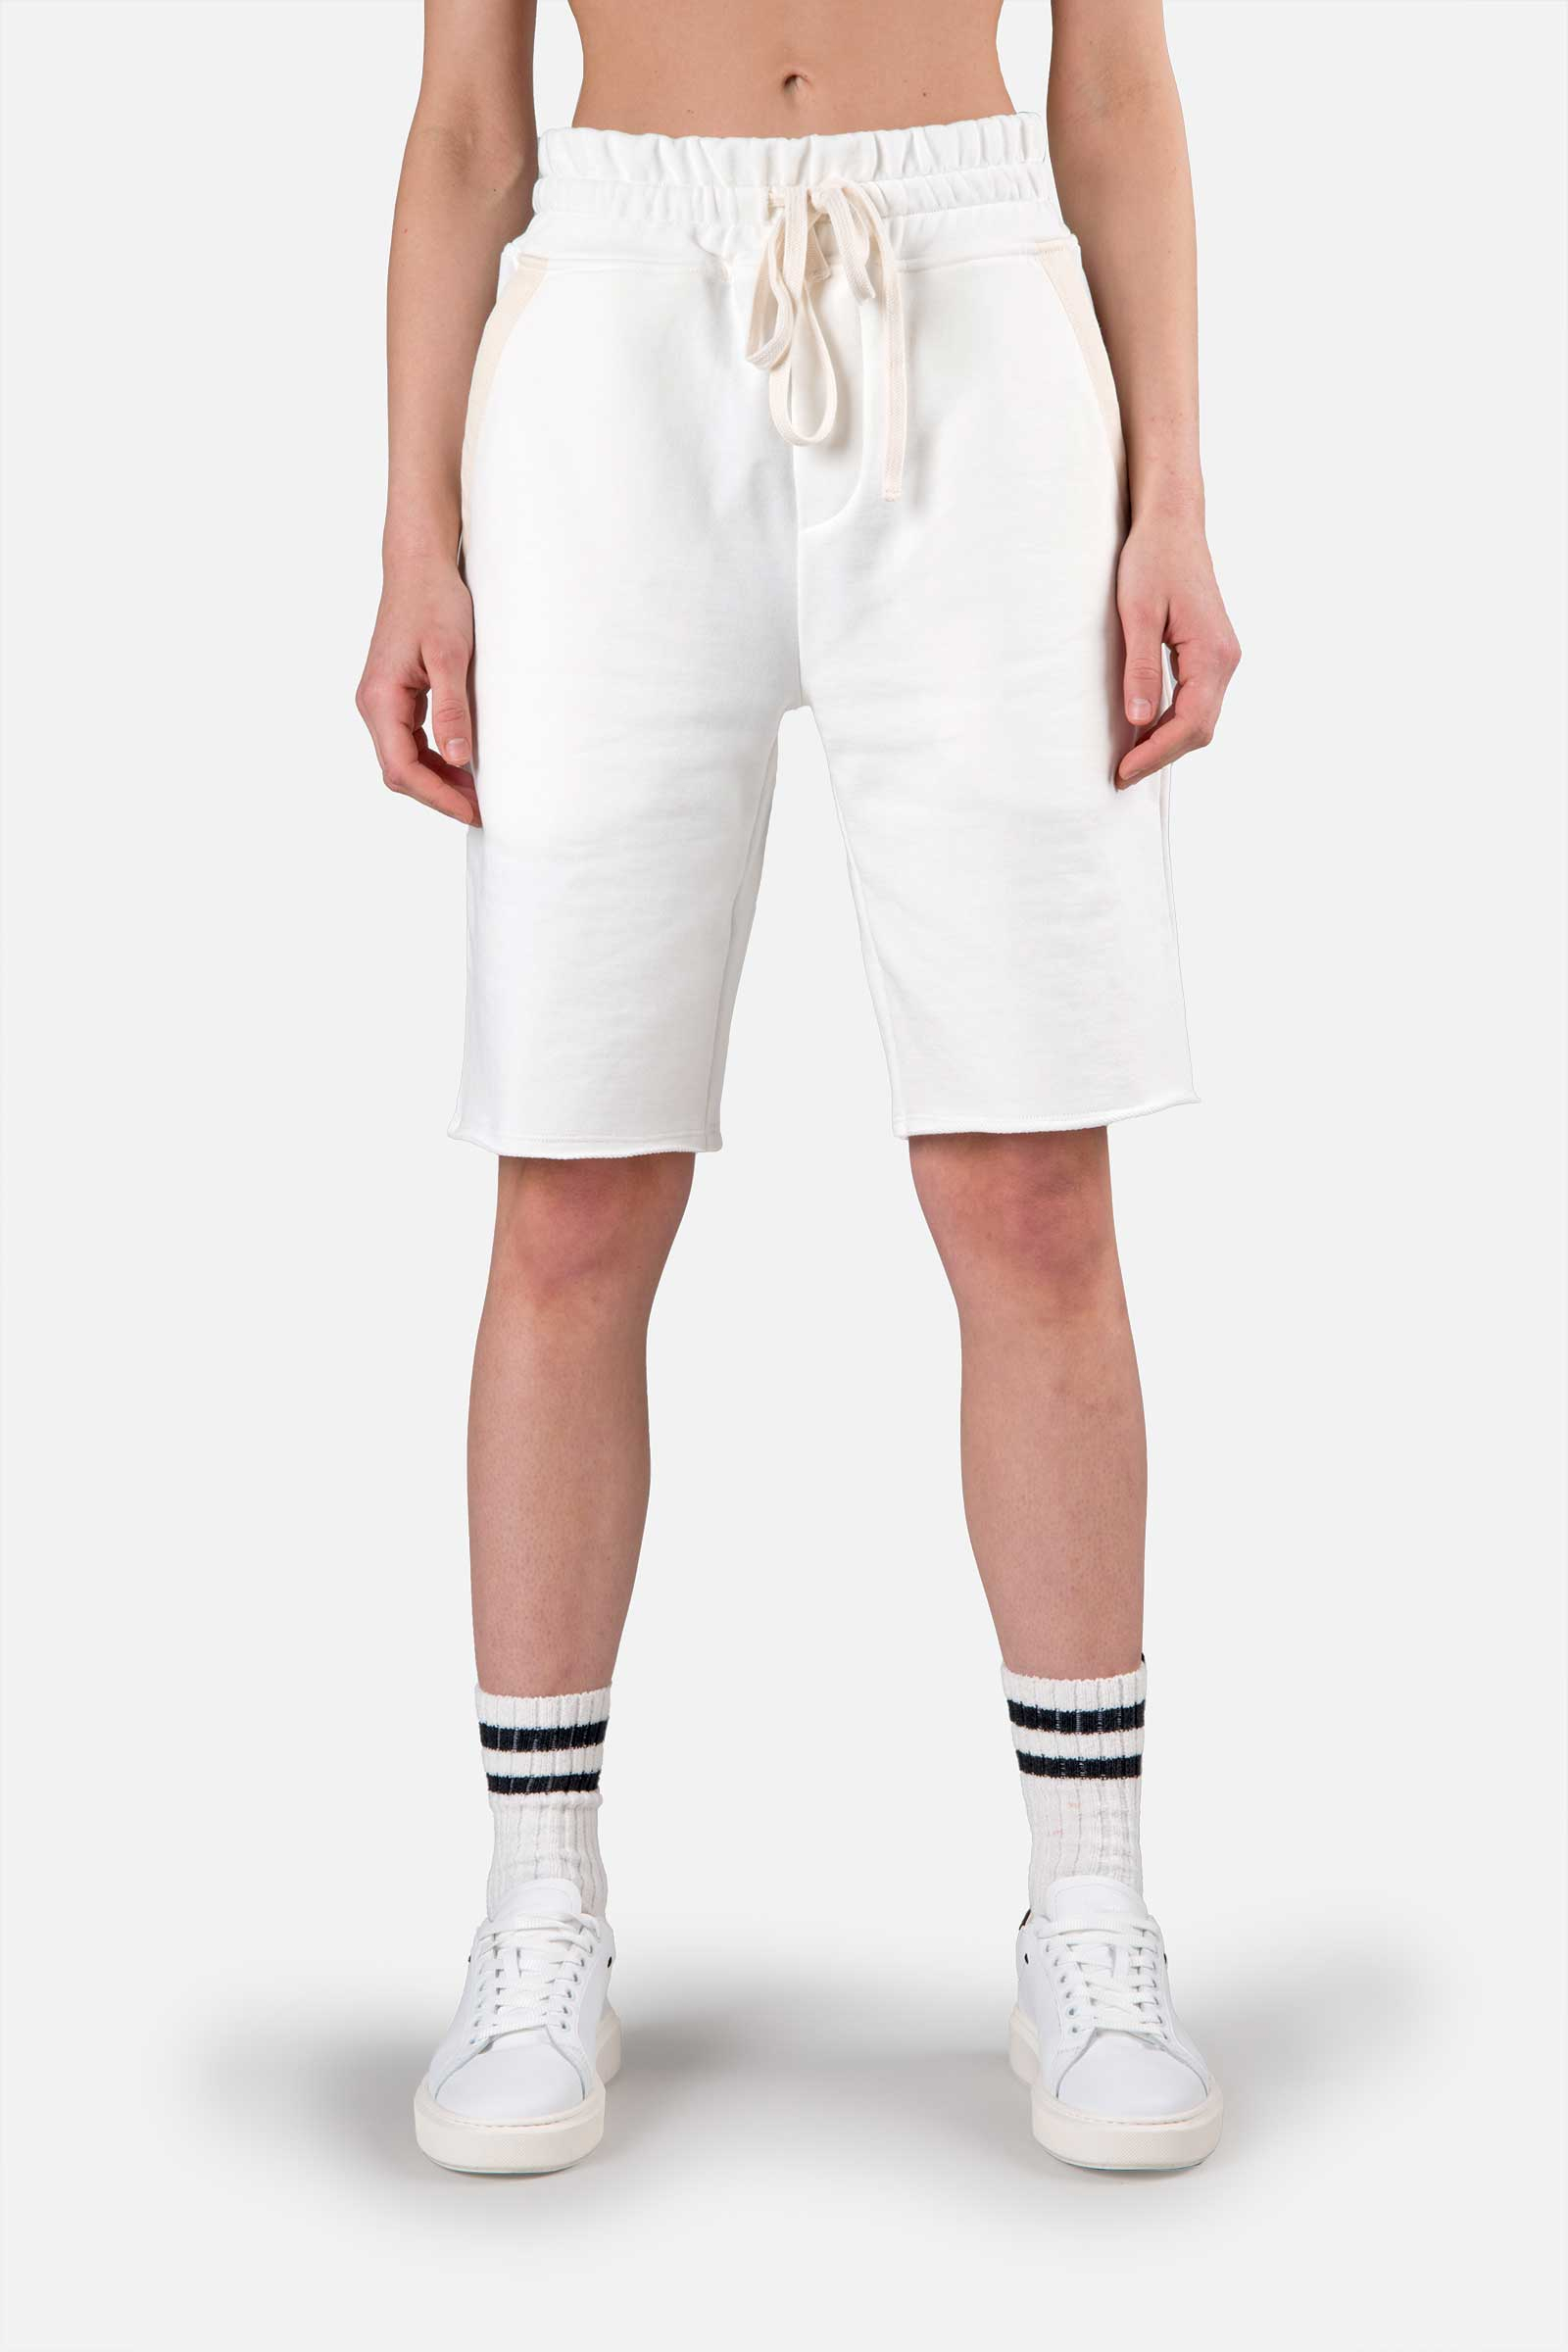 SHORTS - WHITE - Hydrogen - Luxury Sportwear